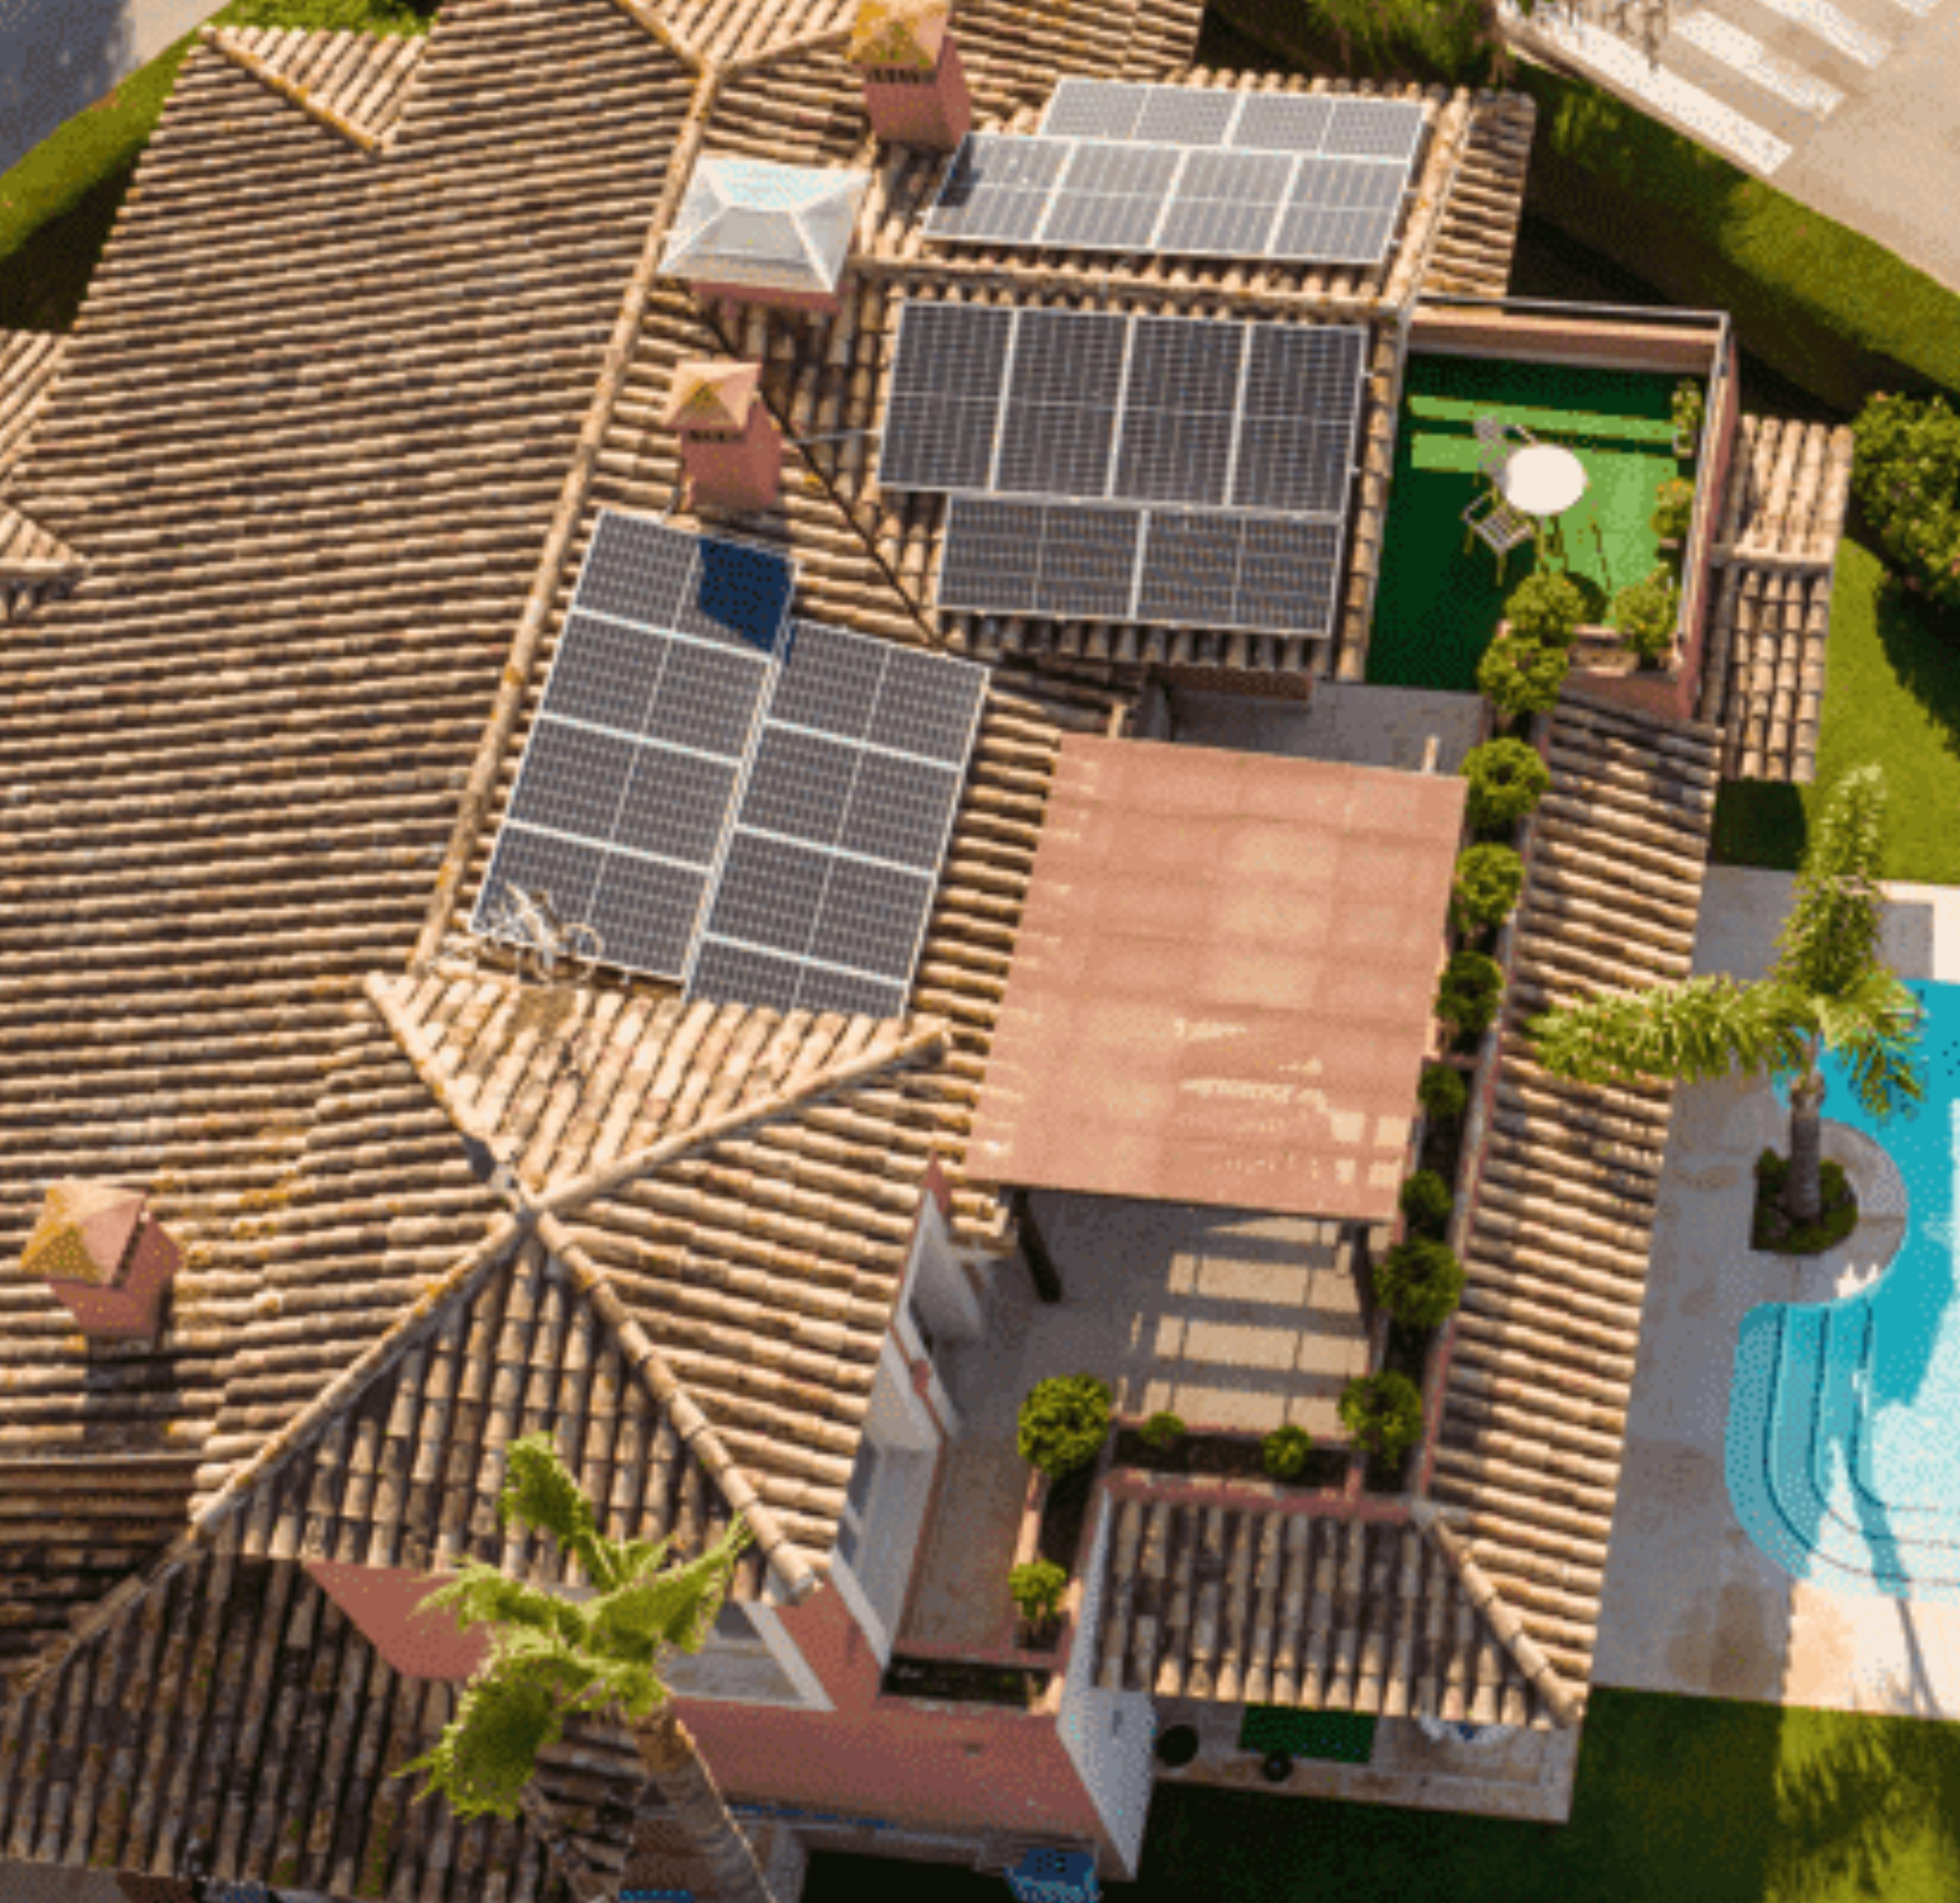 vivenda com painéis solares instalados em telhado